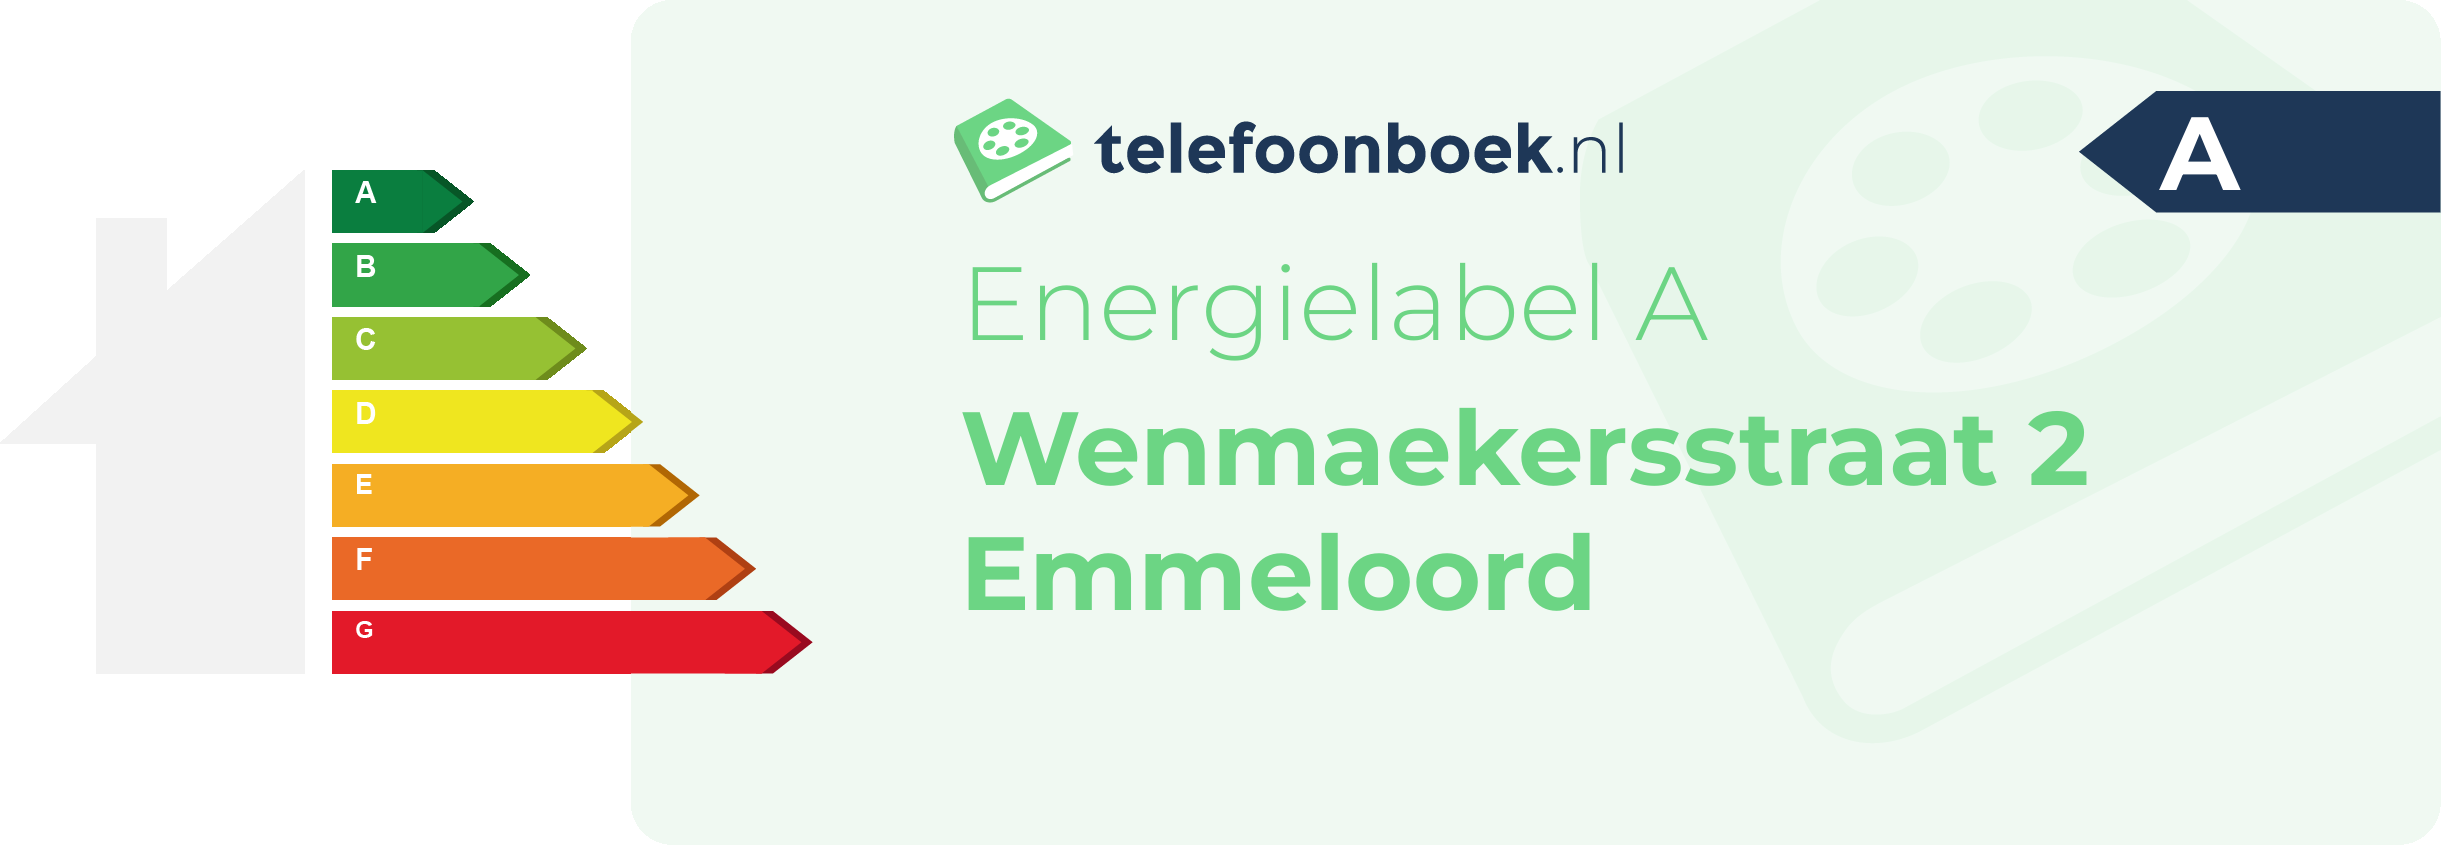 Energielabel Wenmaekersstraat 2 Emmeloord